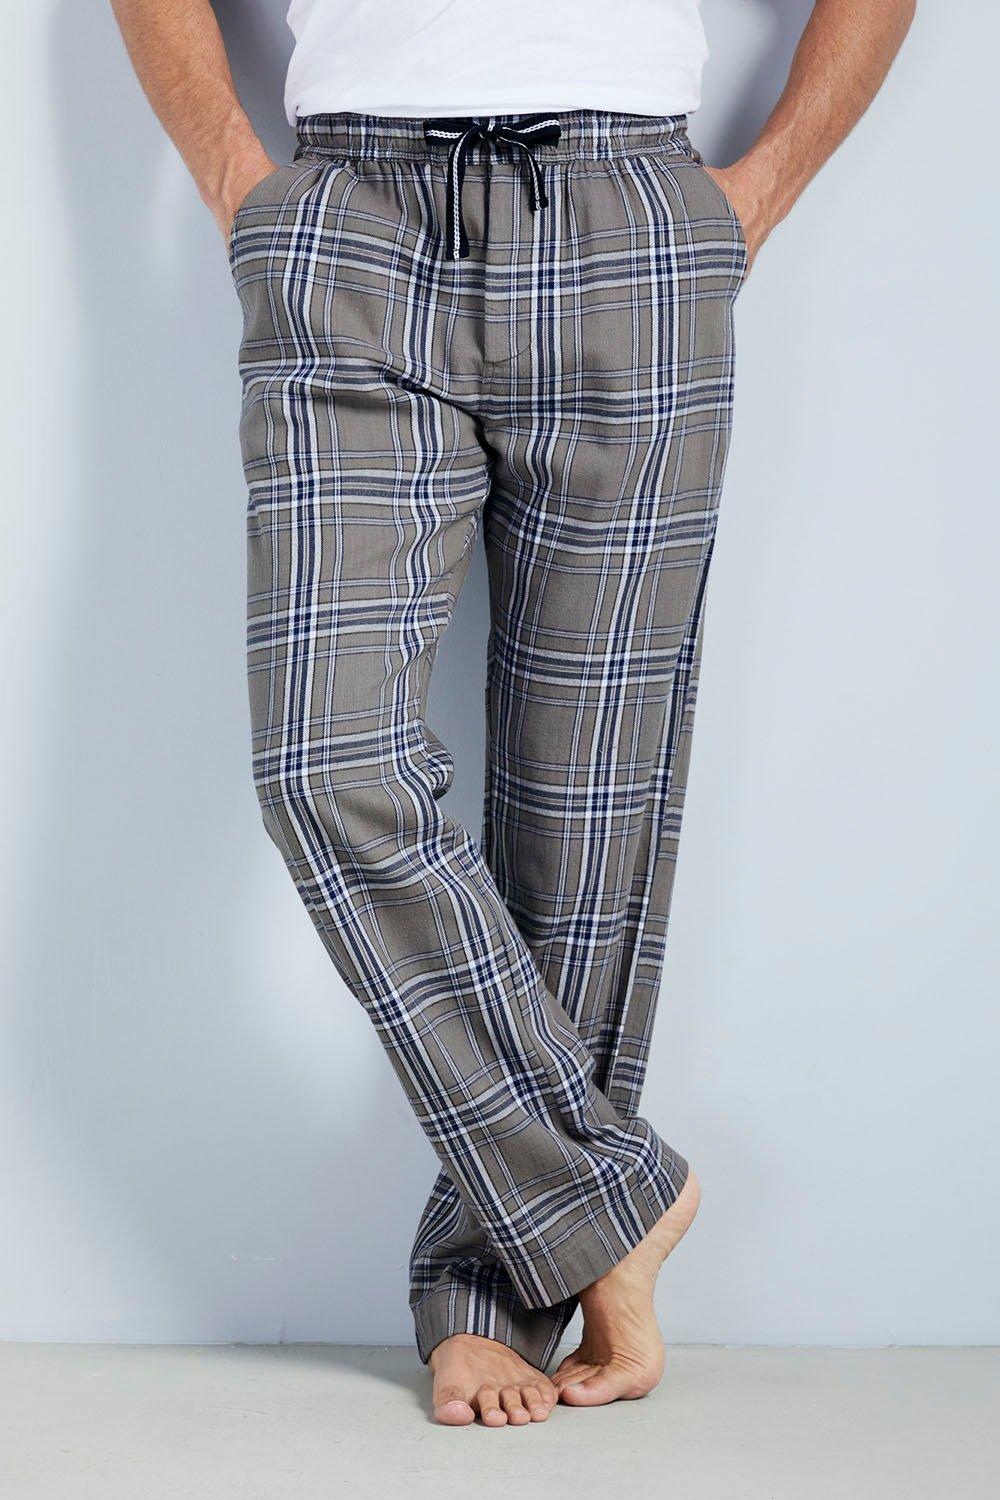 Loungewear Brushed Trousers 27" (68.5cm) Inside leg